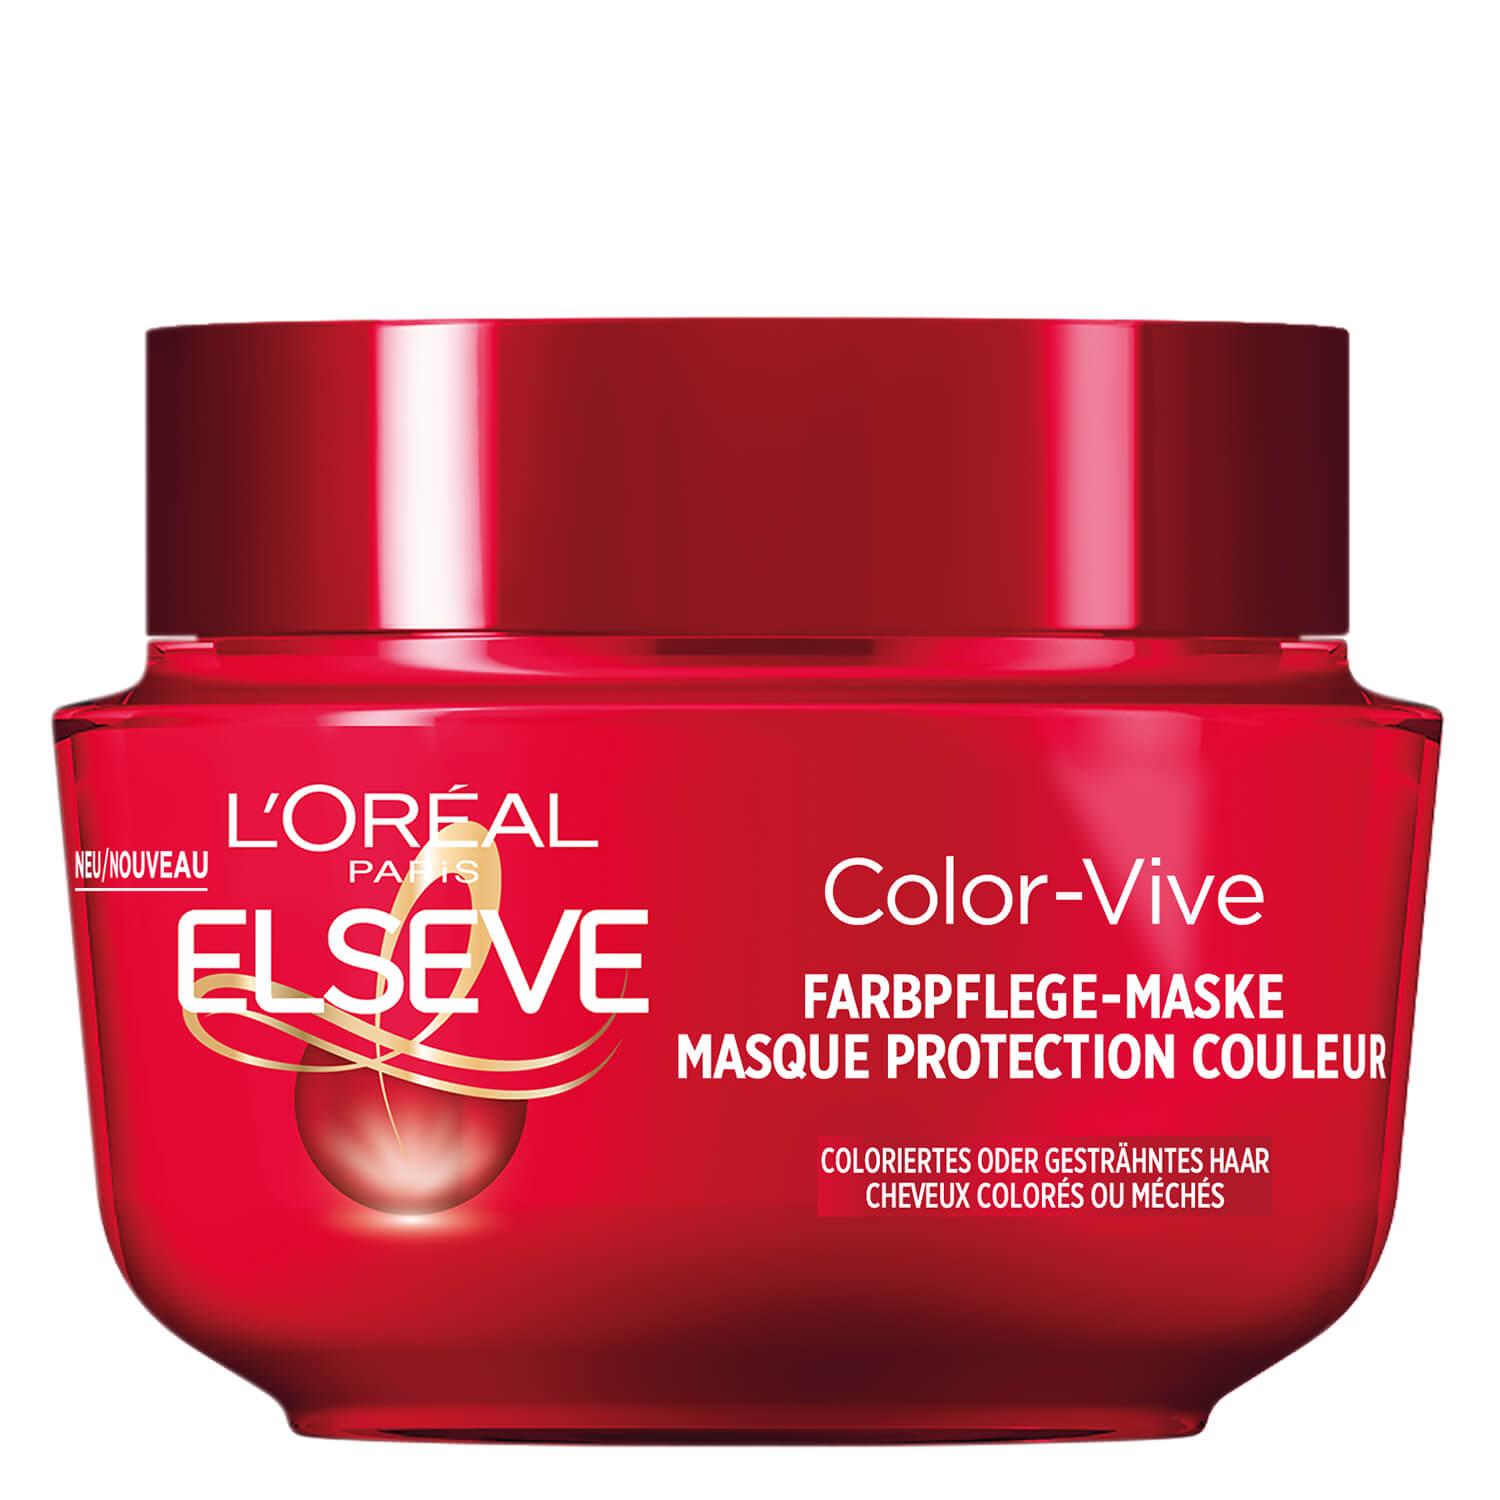 LOréal Elseve Haircare - Color-Vive Masque Protection Couleur